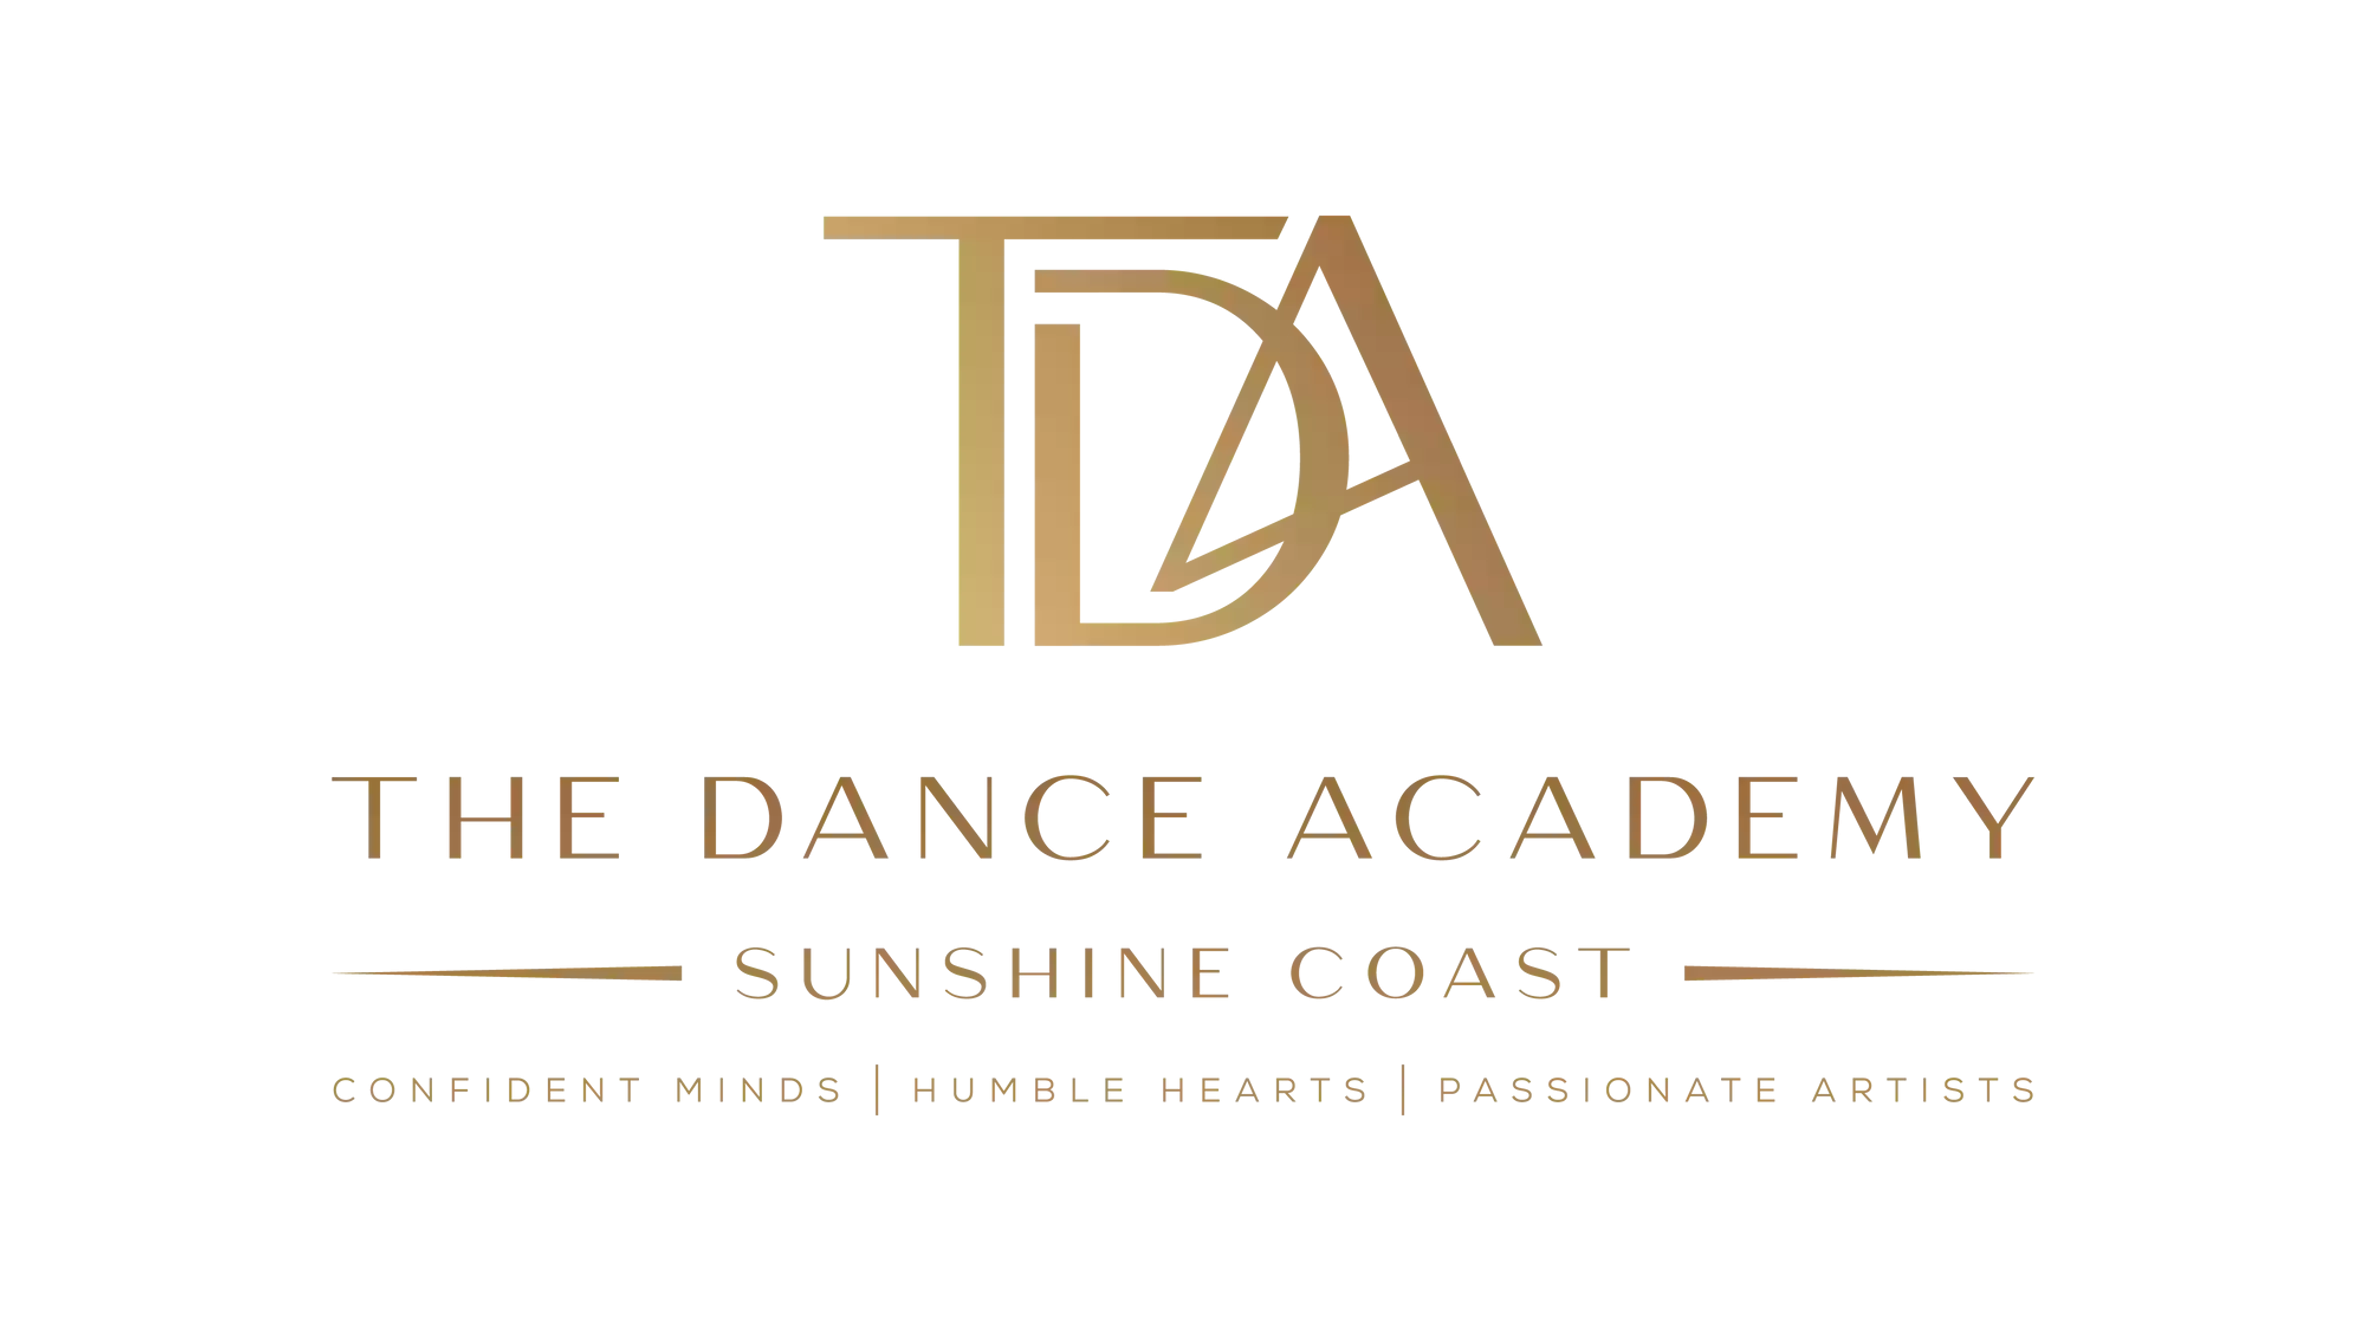 The Dance Academy